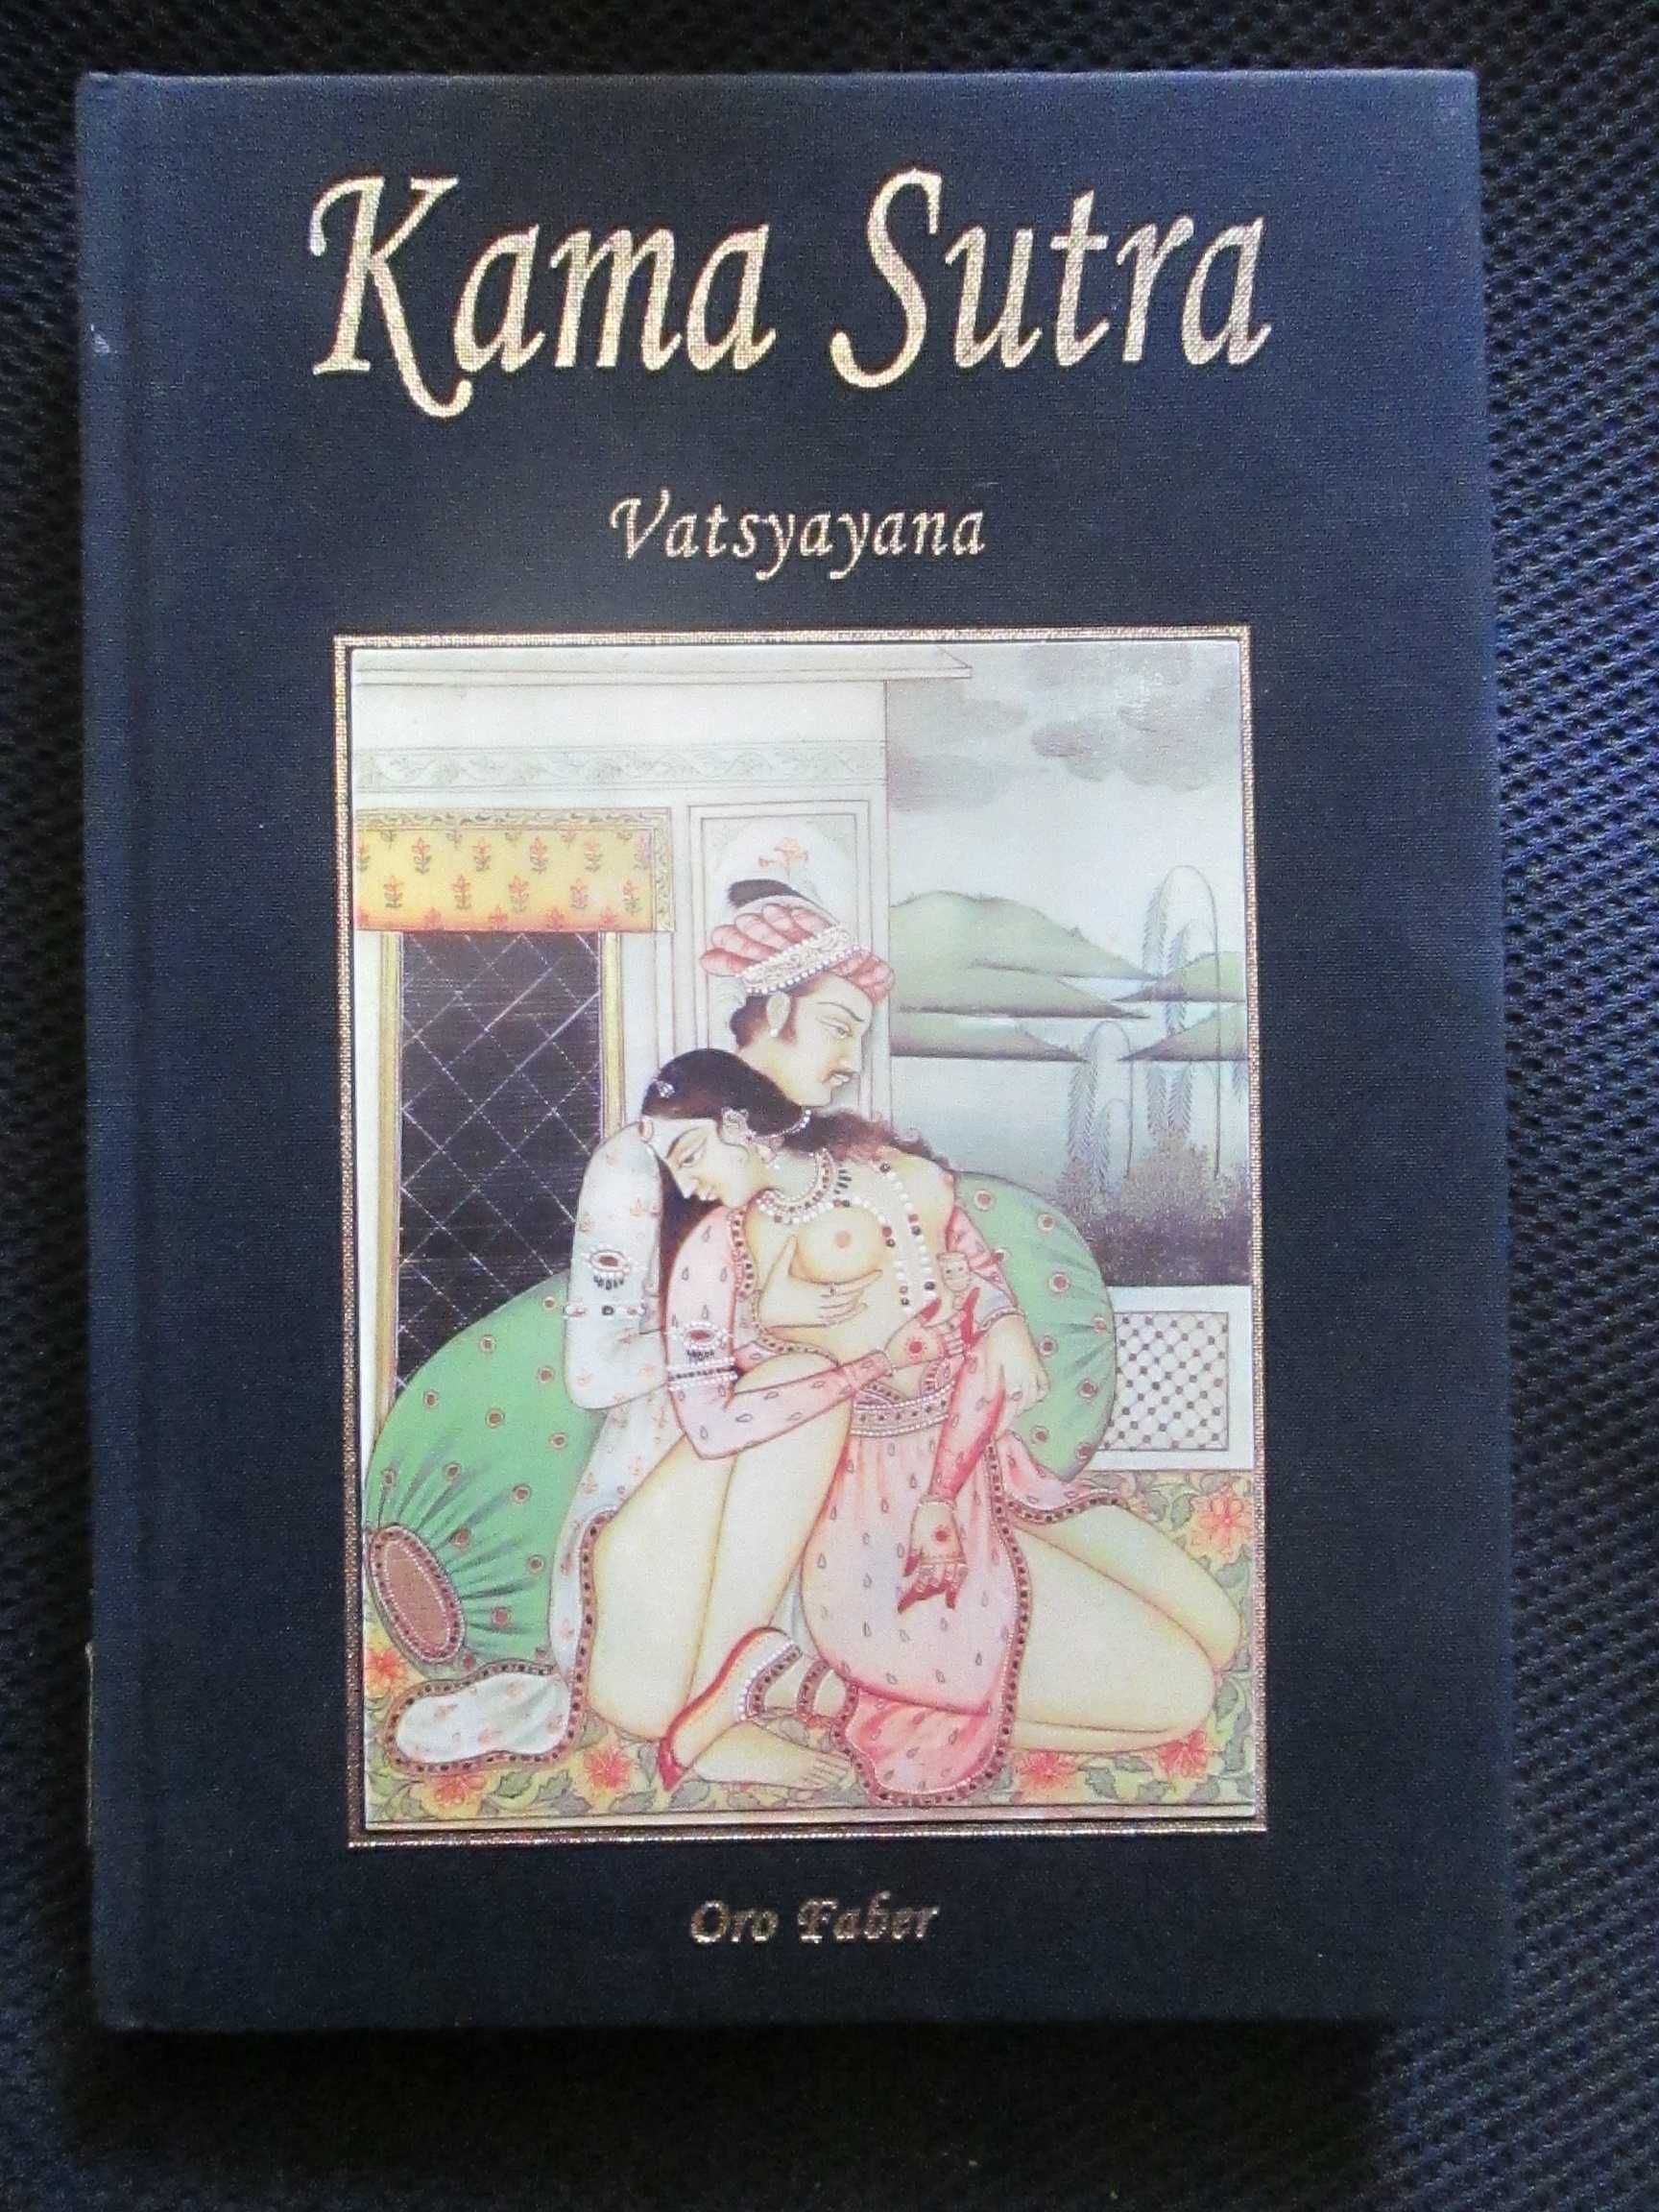 Kama Sutra, edição especial ilustrada, como novo